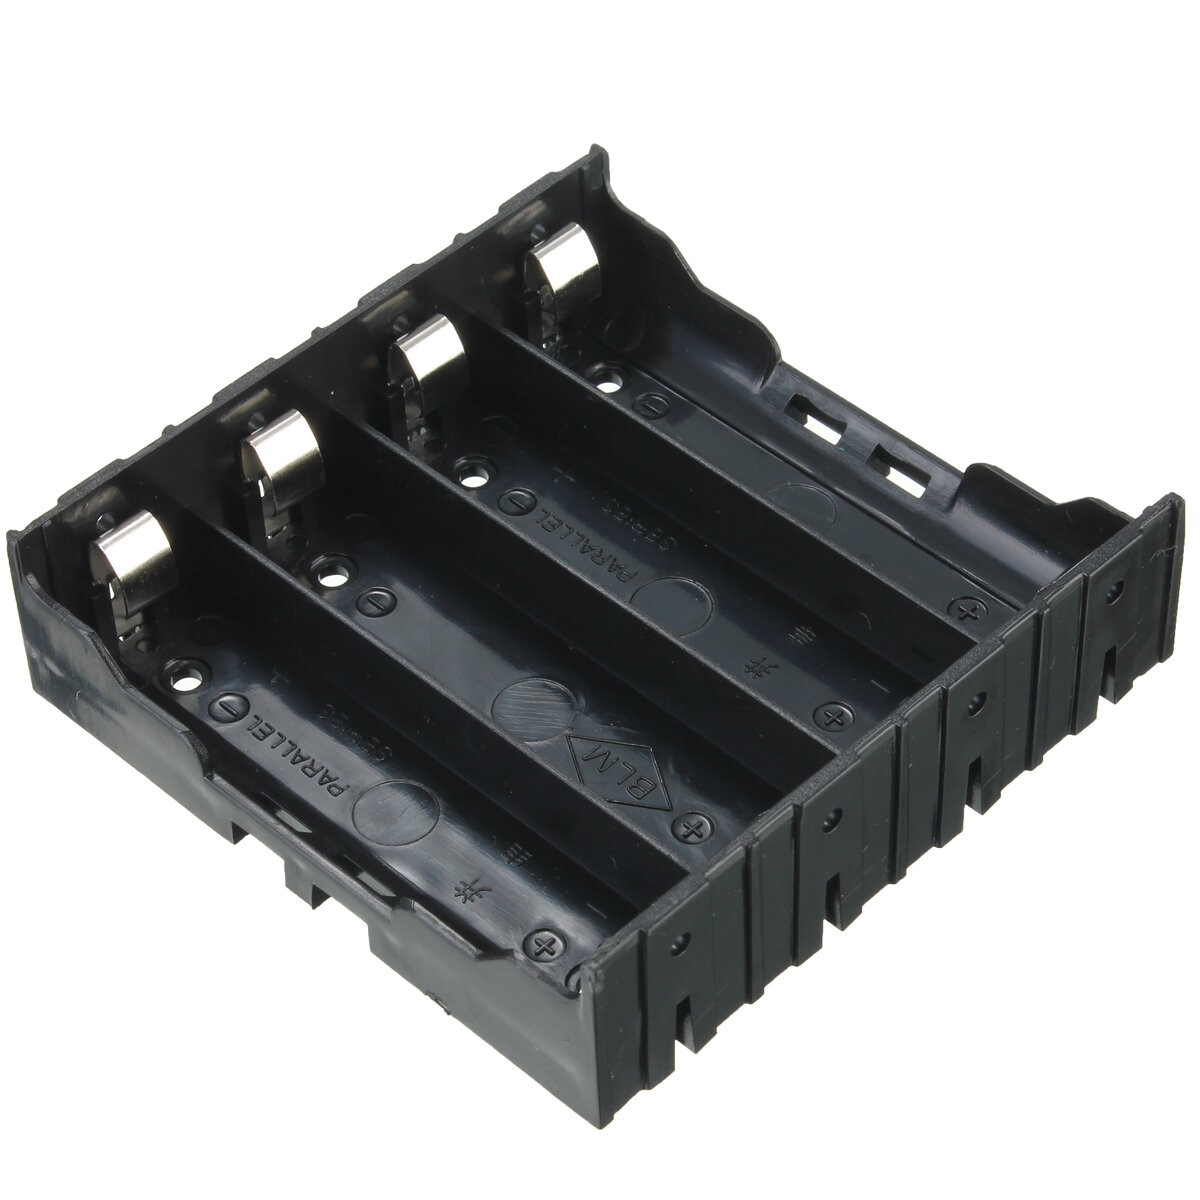 

Пластиковый держатель для чехола батарей Коробка хранения DIY для 4шт 18650 3.7V Перезаряжаемые Аккумуляторы